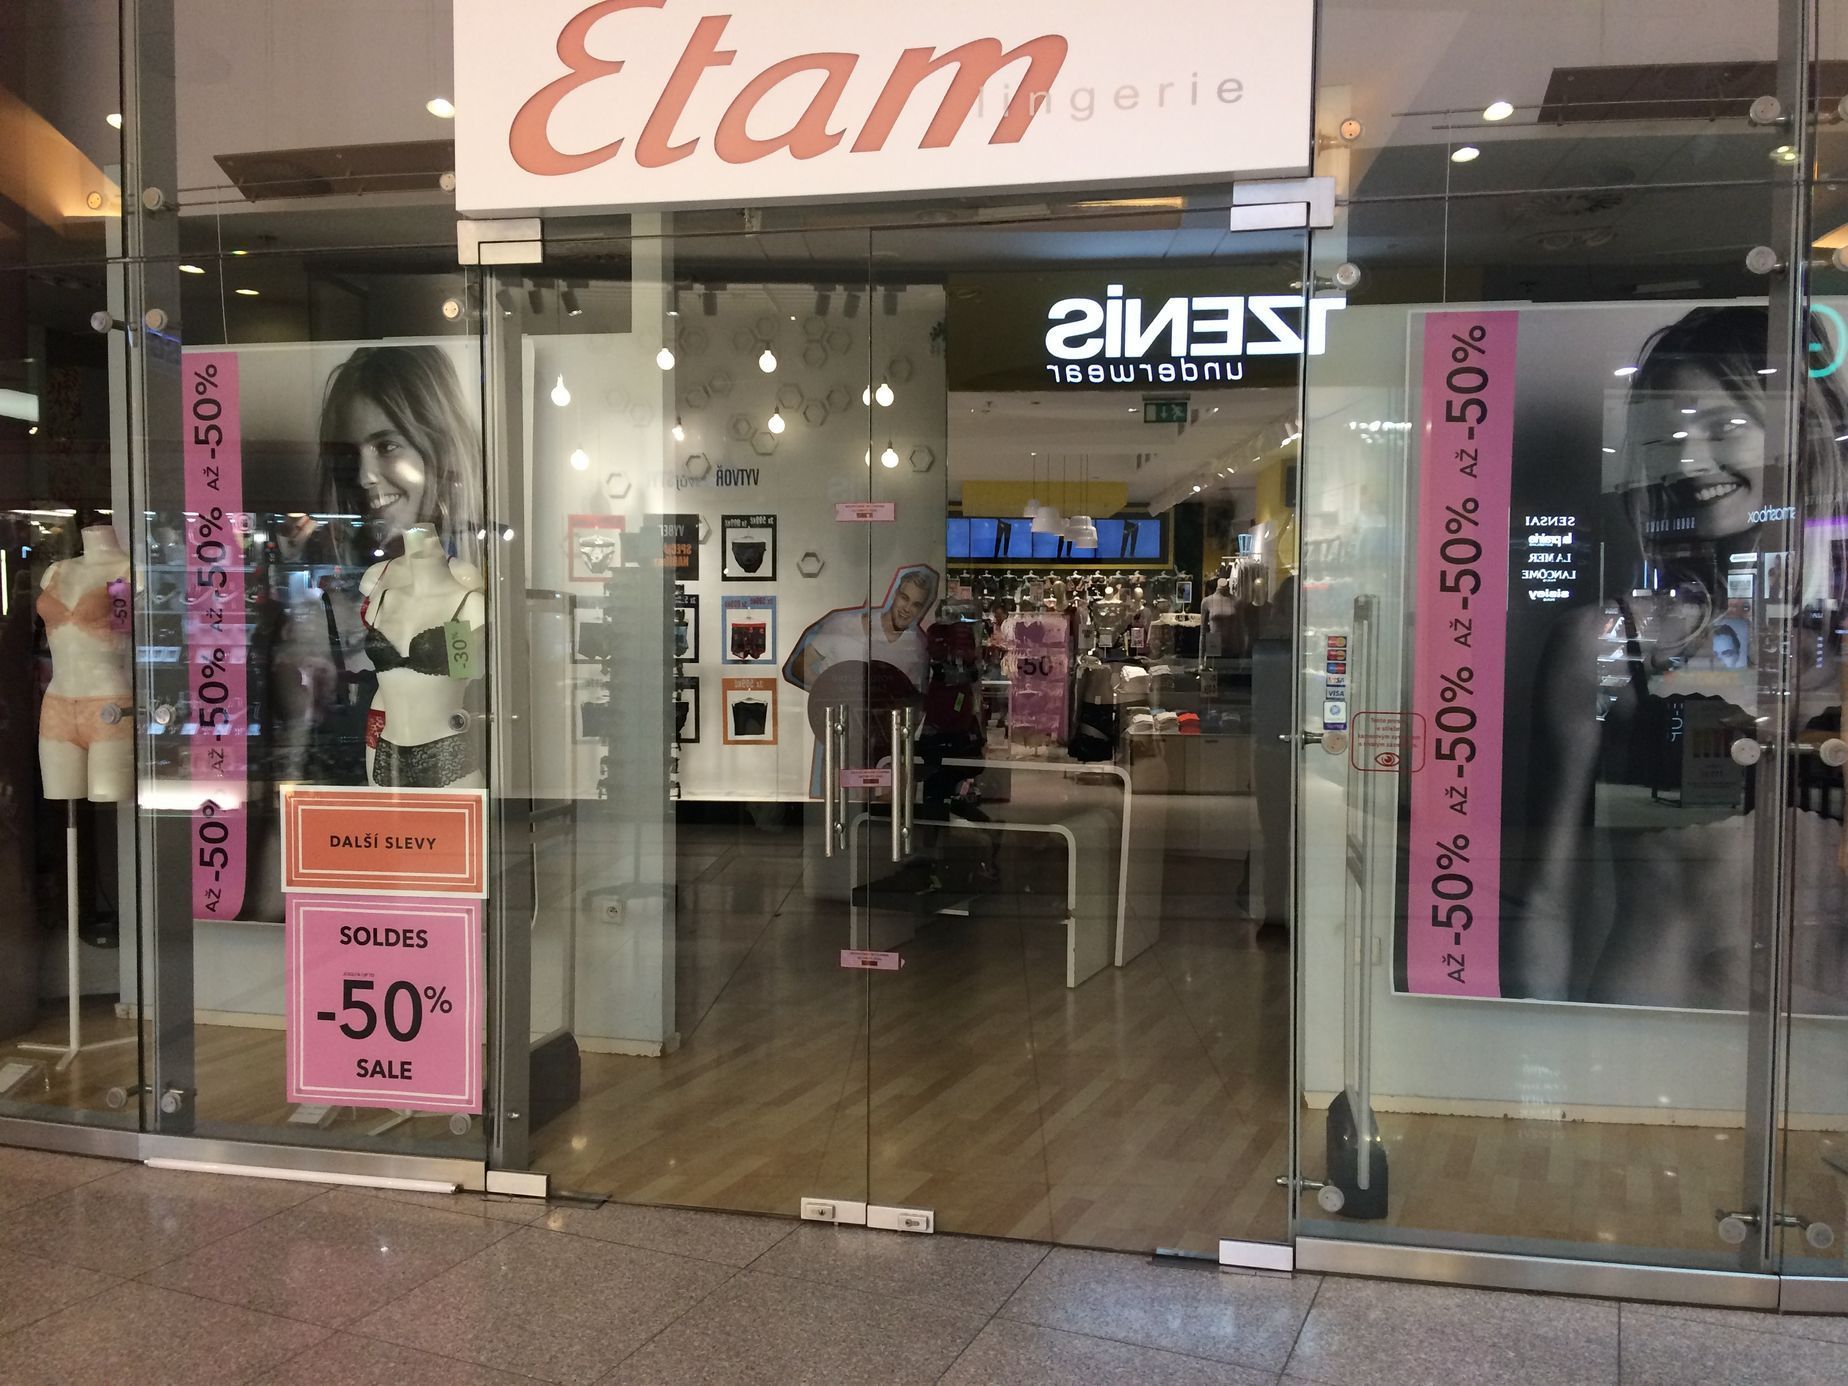 Prodejny značky Etam v Česku jsou zavřené a zapečetěné.